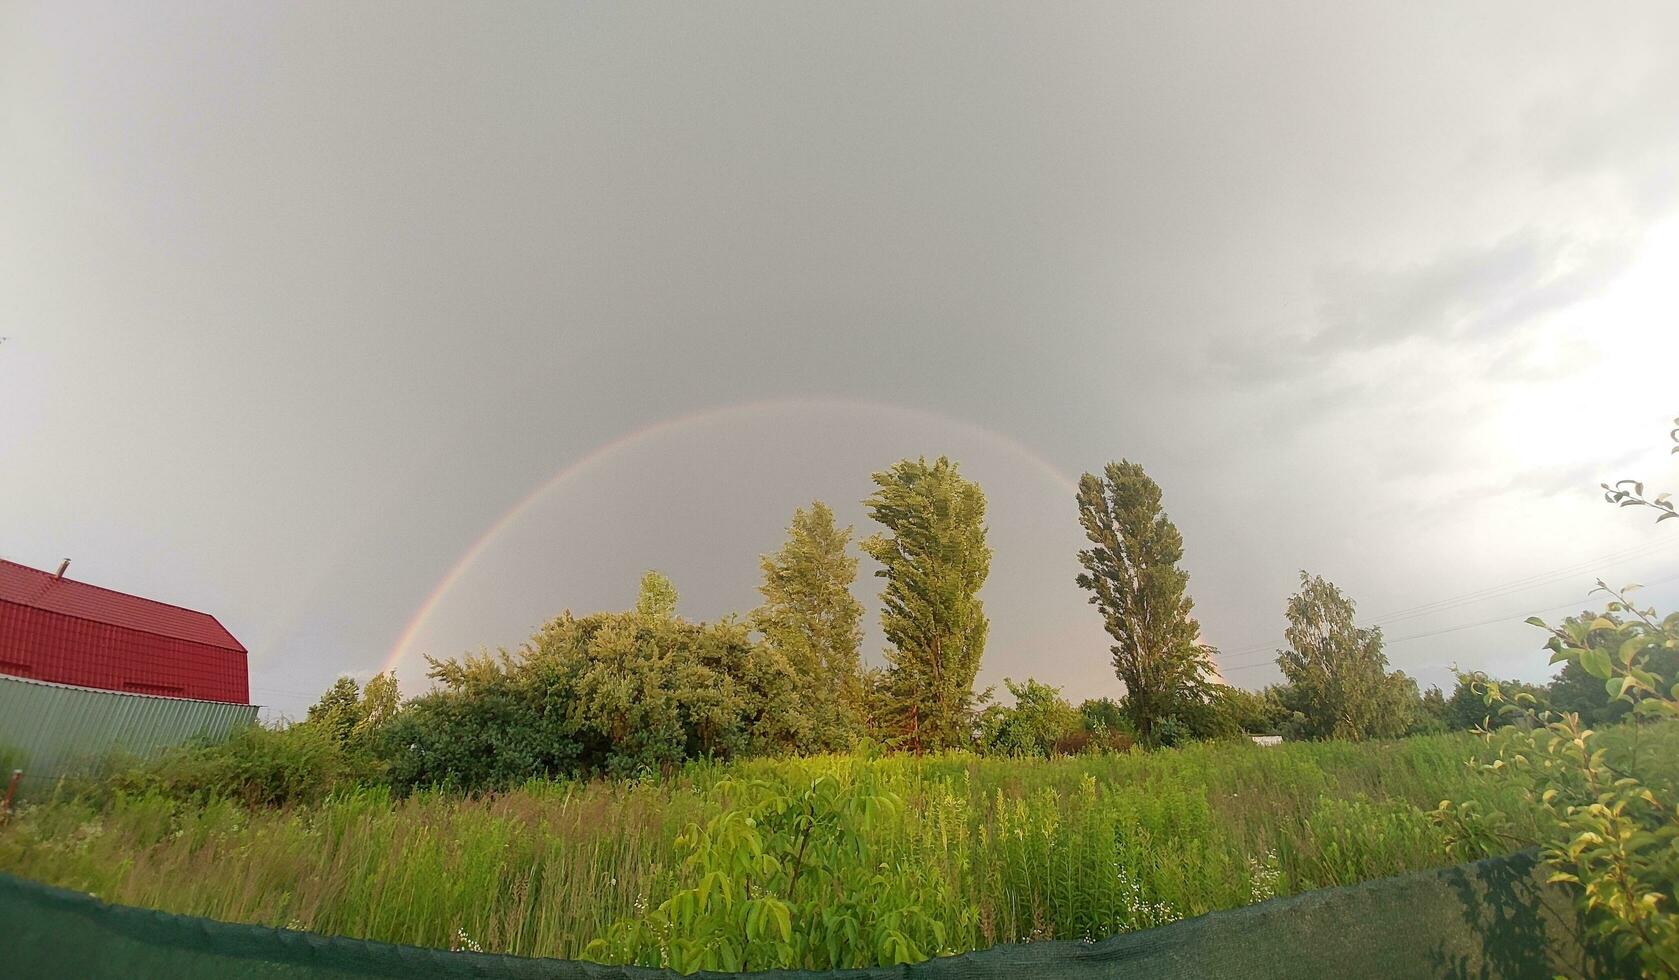 Full rainbow after rain against the sky photo